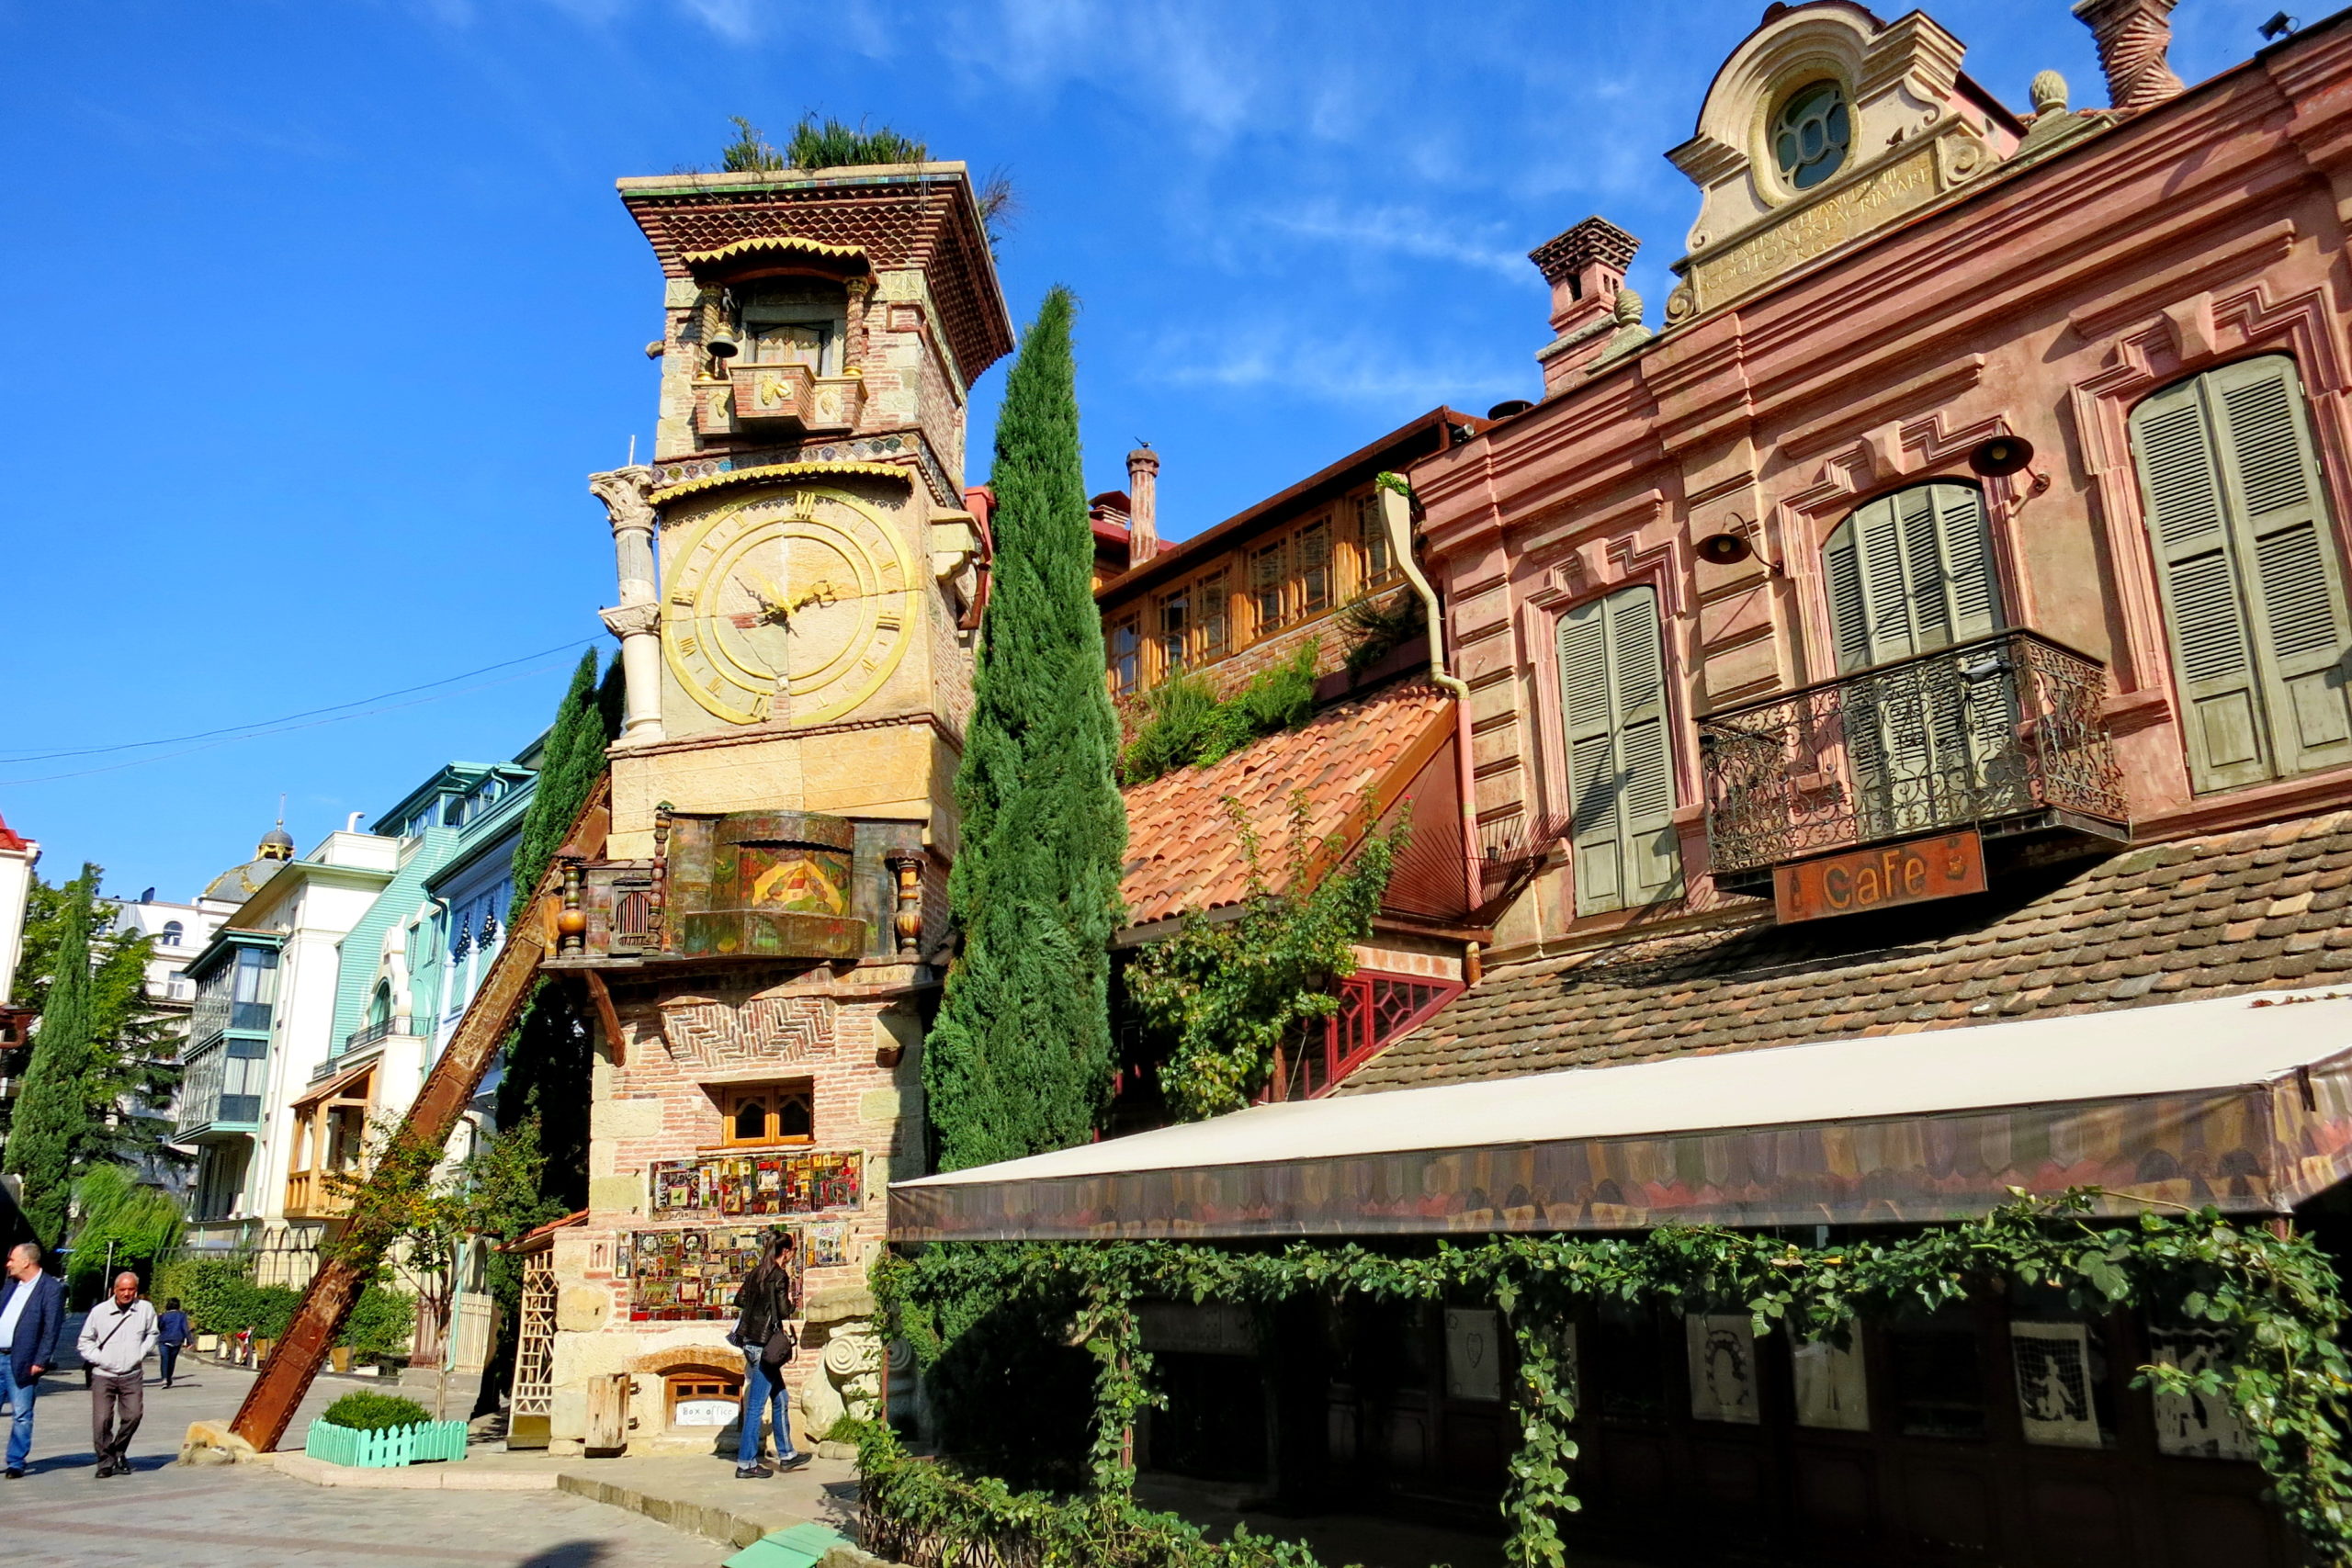 Лучшие места для маленьких путешественников в Тбилиси